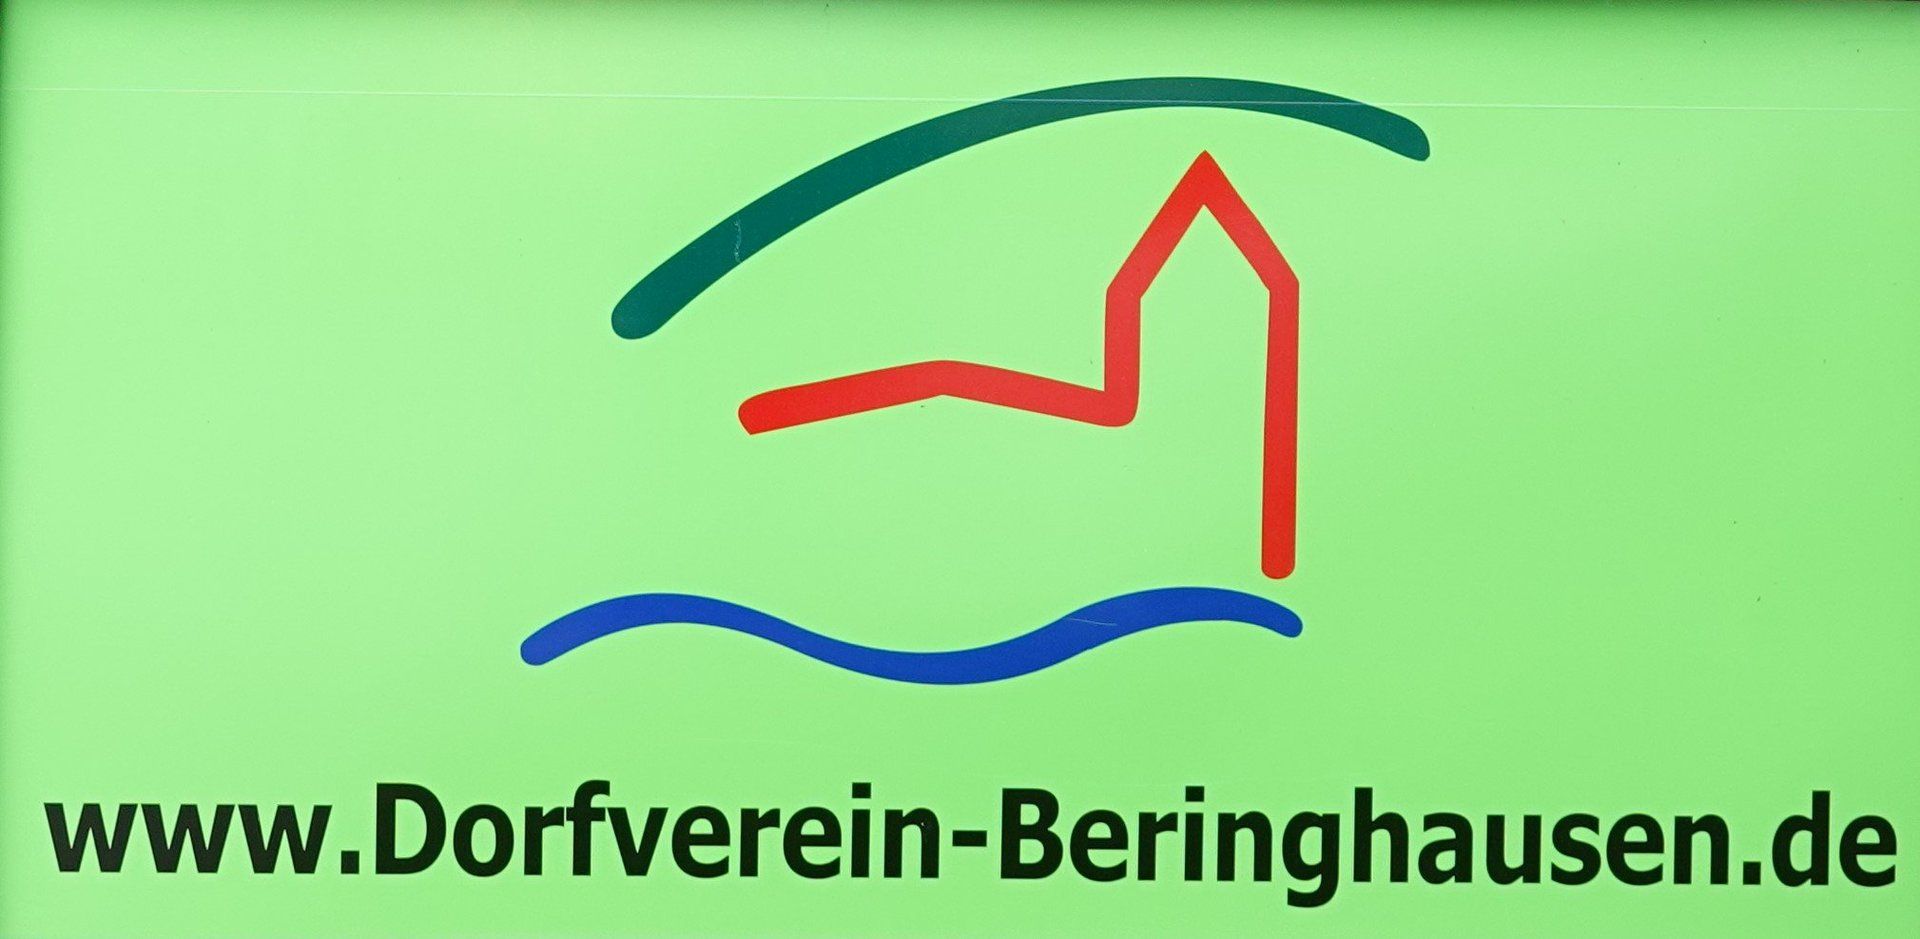 Dorfverein-Beringhausen